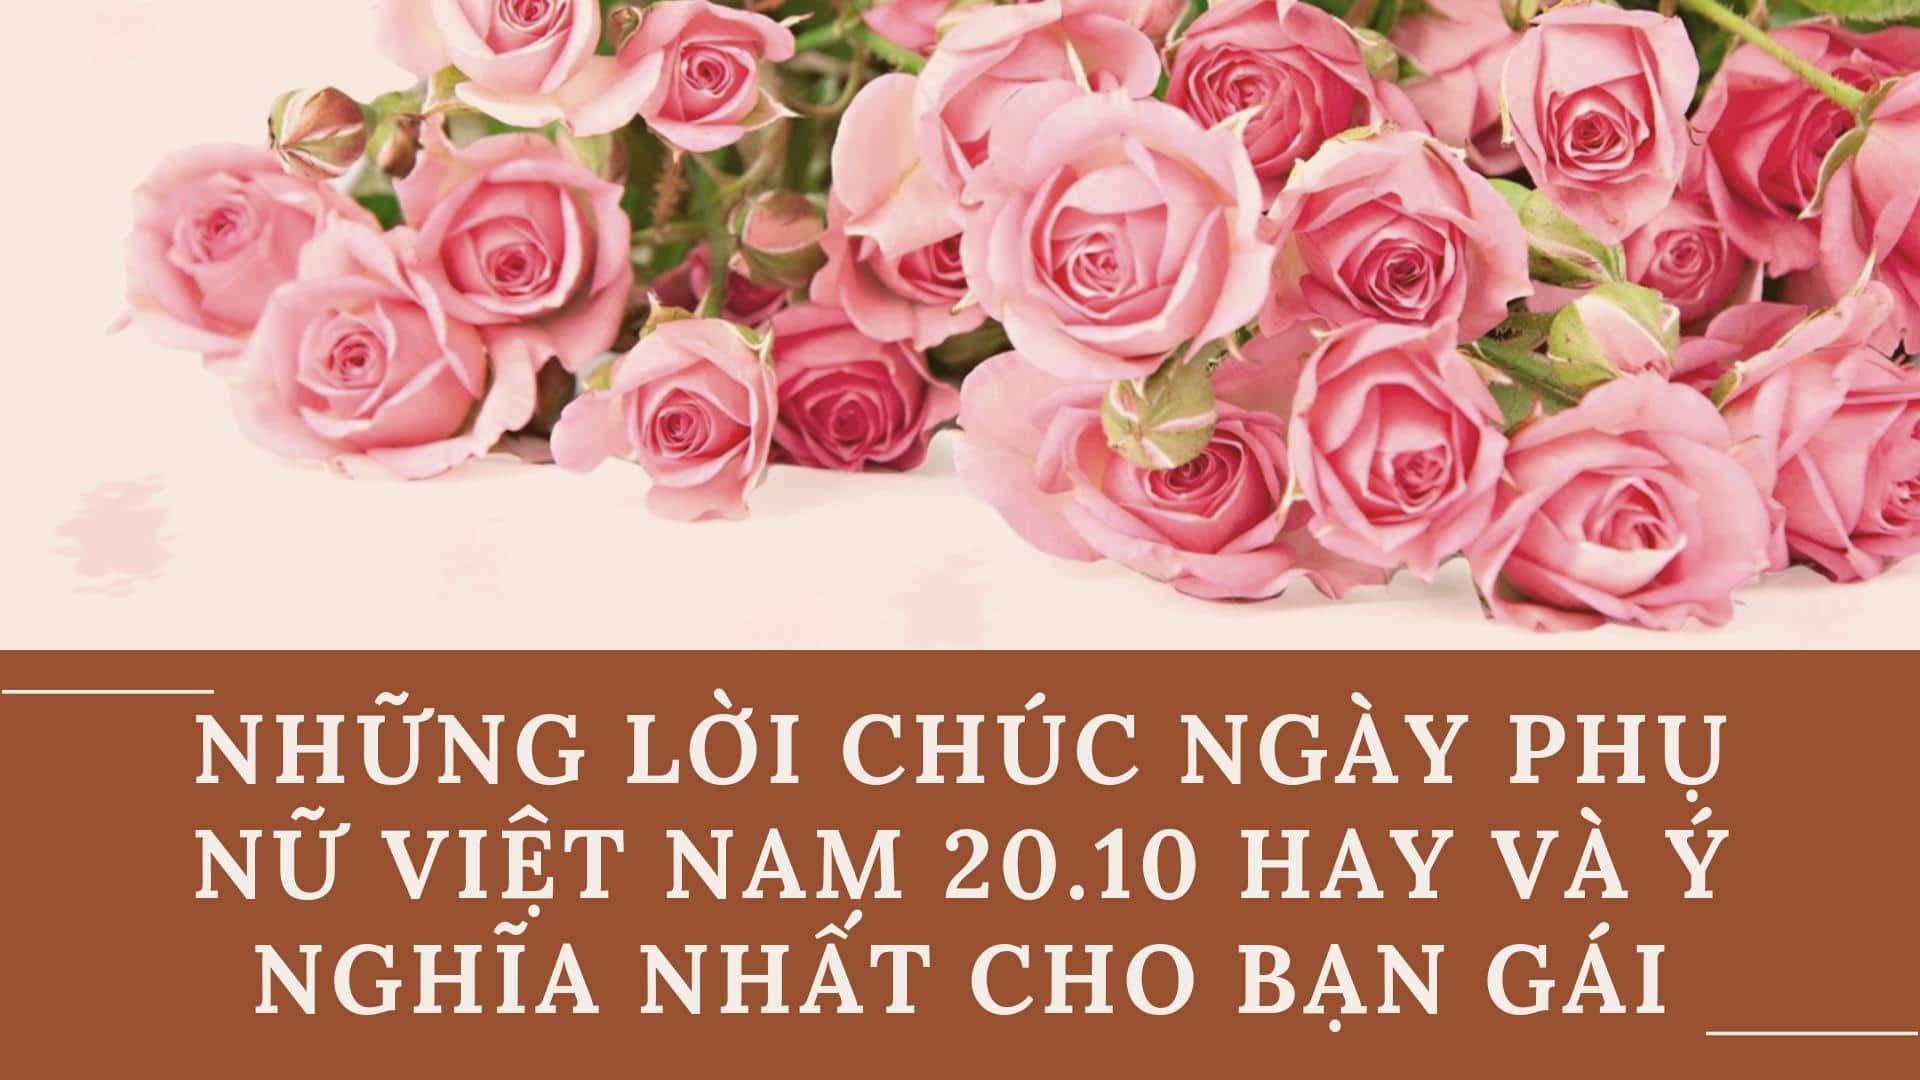 Chúc mừng ngày phụ nữ Việt Nam cho bạn gái